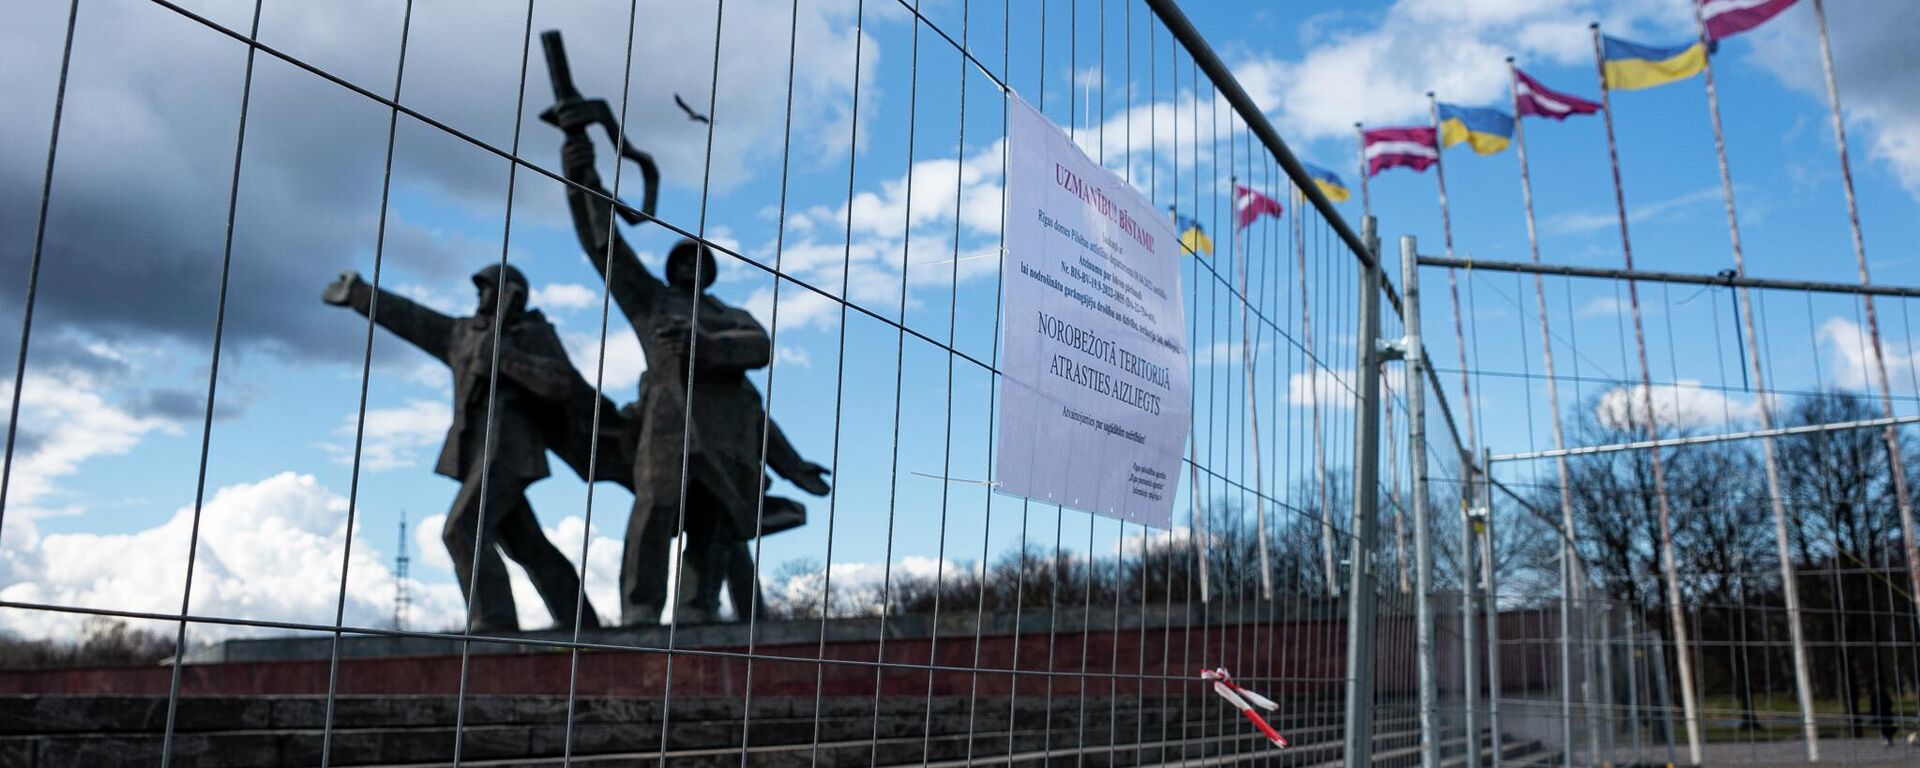 11 апреля мэр Риги принял решение оградить территорию памятника Освободителям Риги в Пардаугаве - Sputnik Латвия, 1920, 08.05.2022